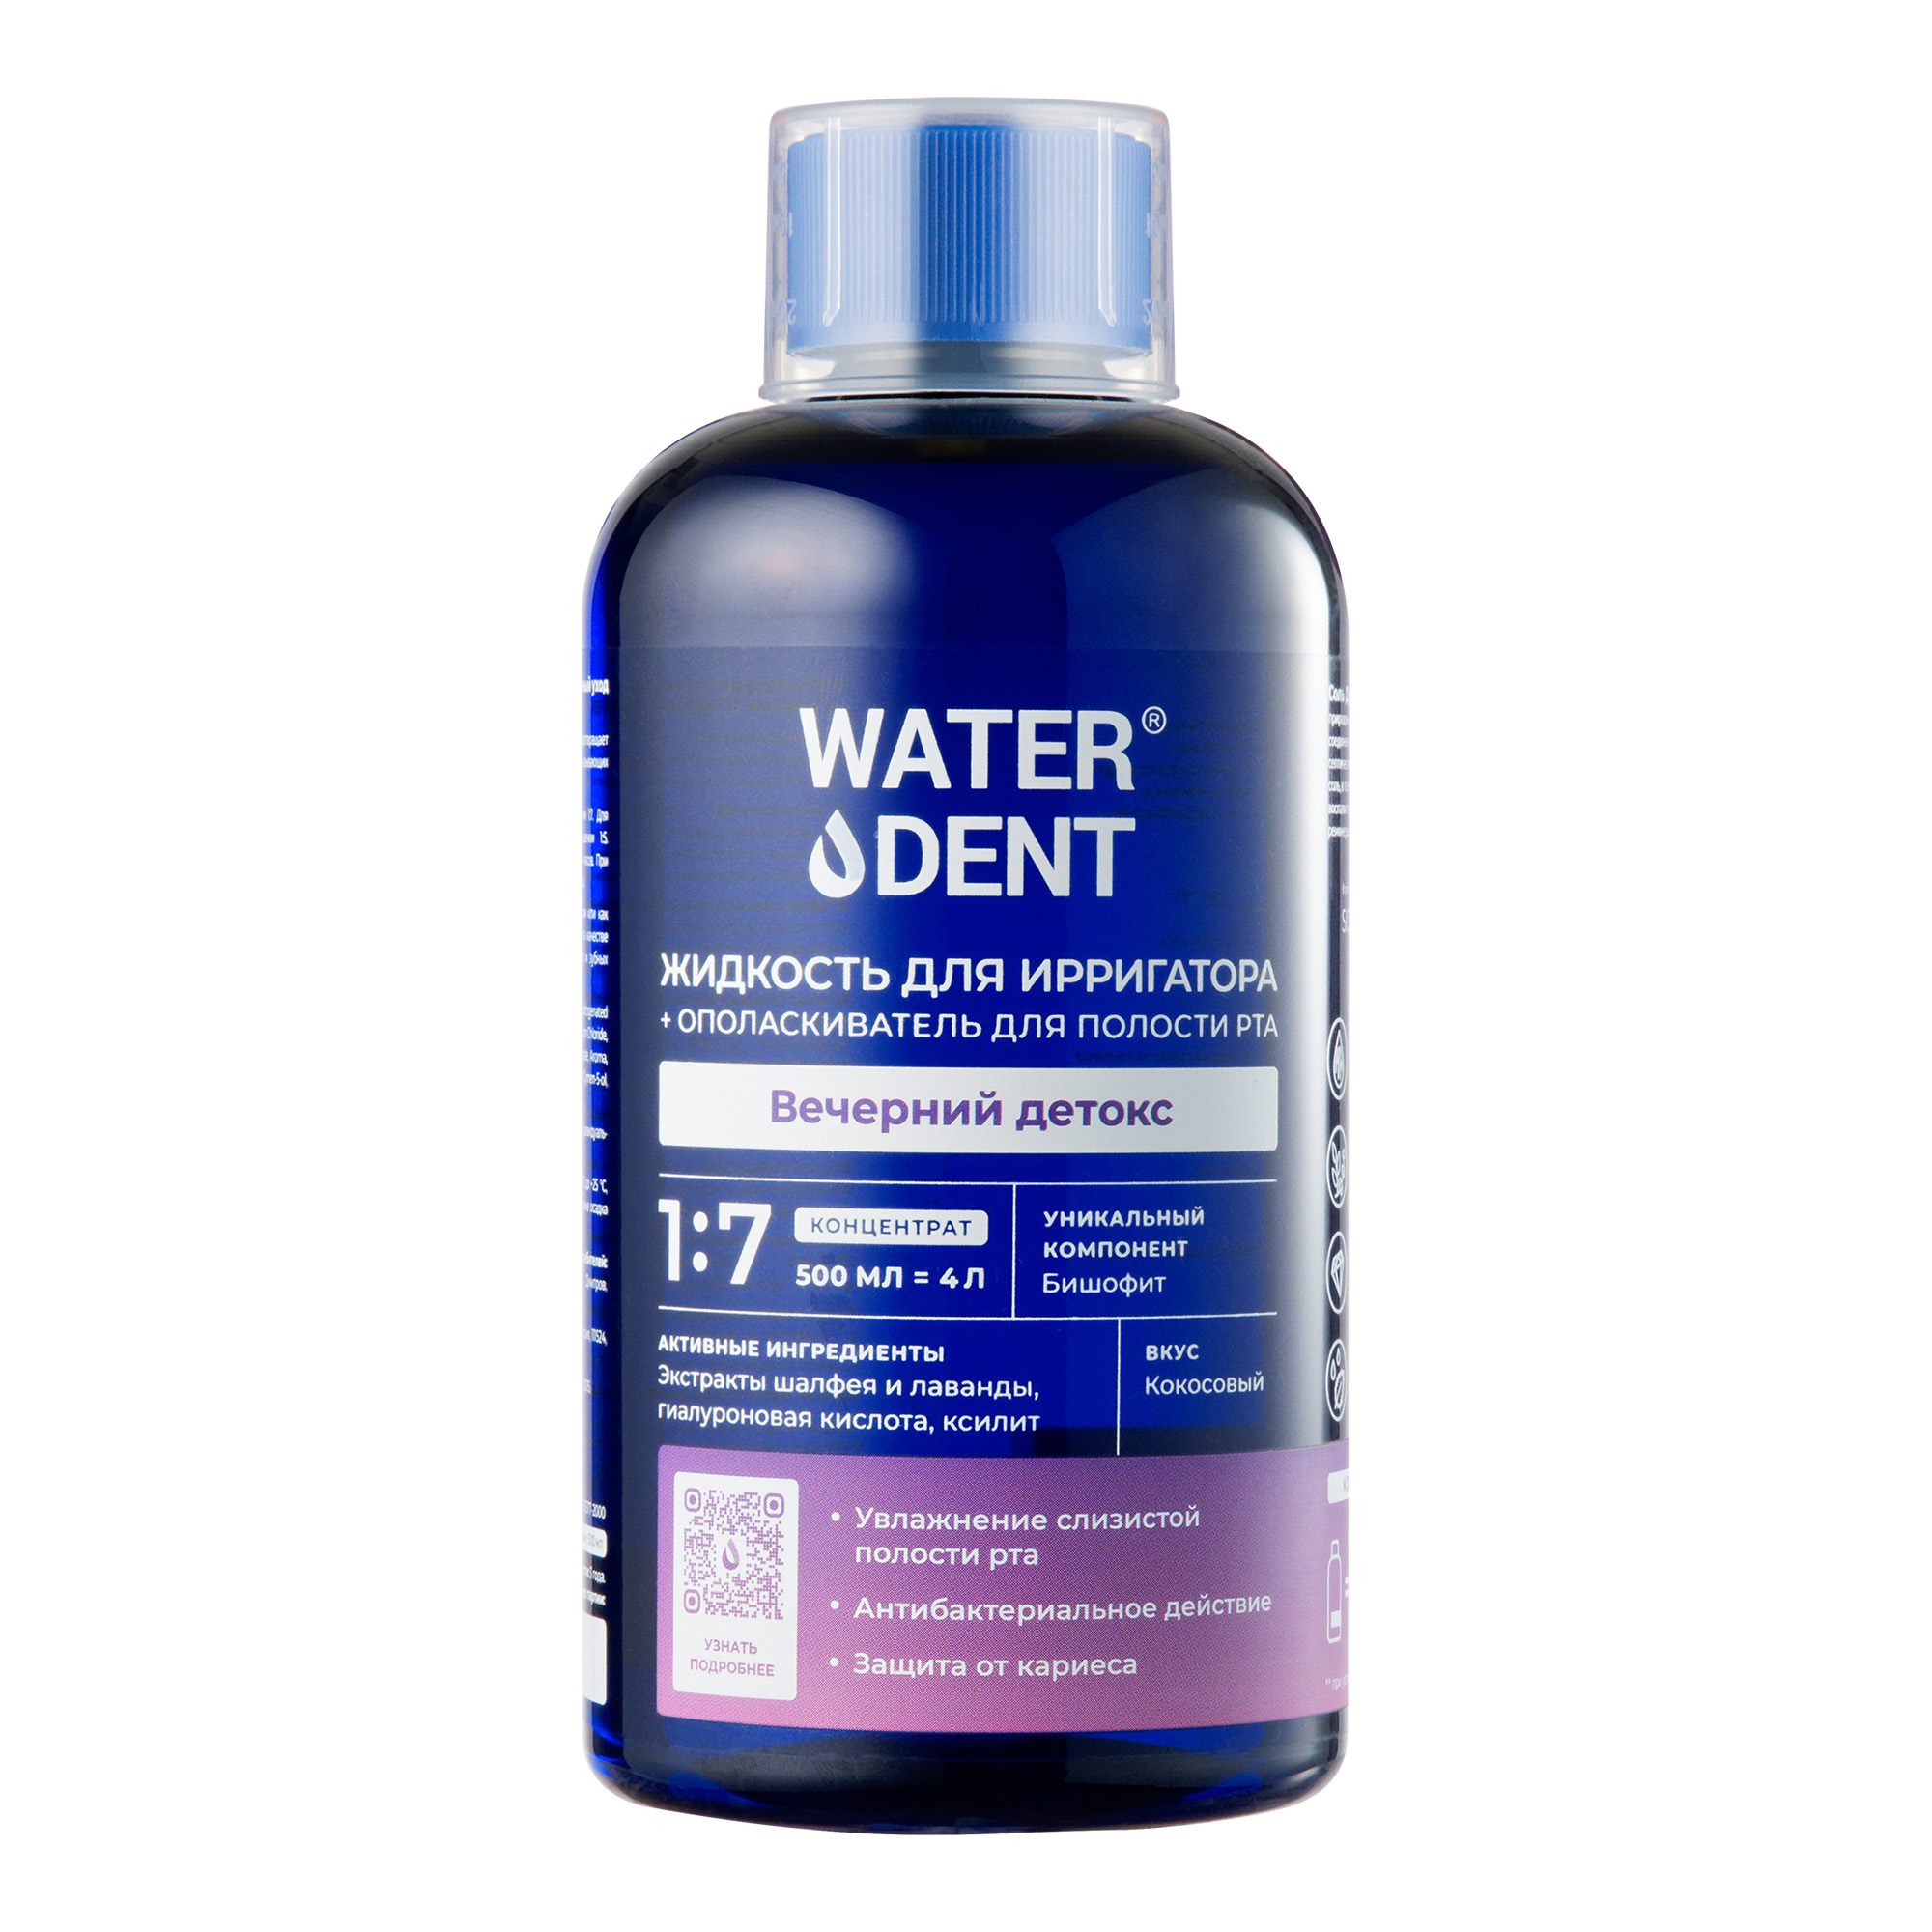 Waterdent, жидкость для ирригатора Вечерний детокс Кокос, флакон 500 мл waterdent жидкость для ирригатора отбеливающая 100 мл